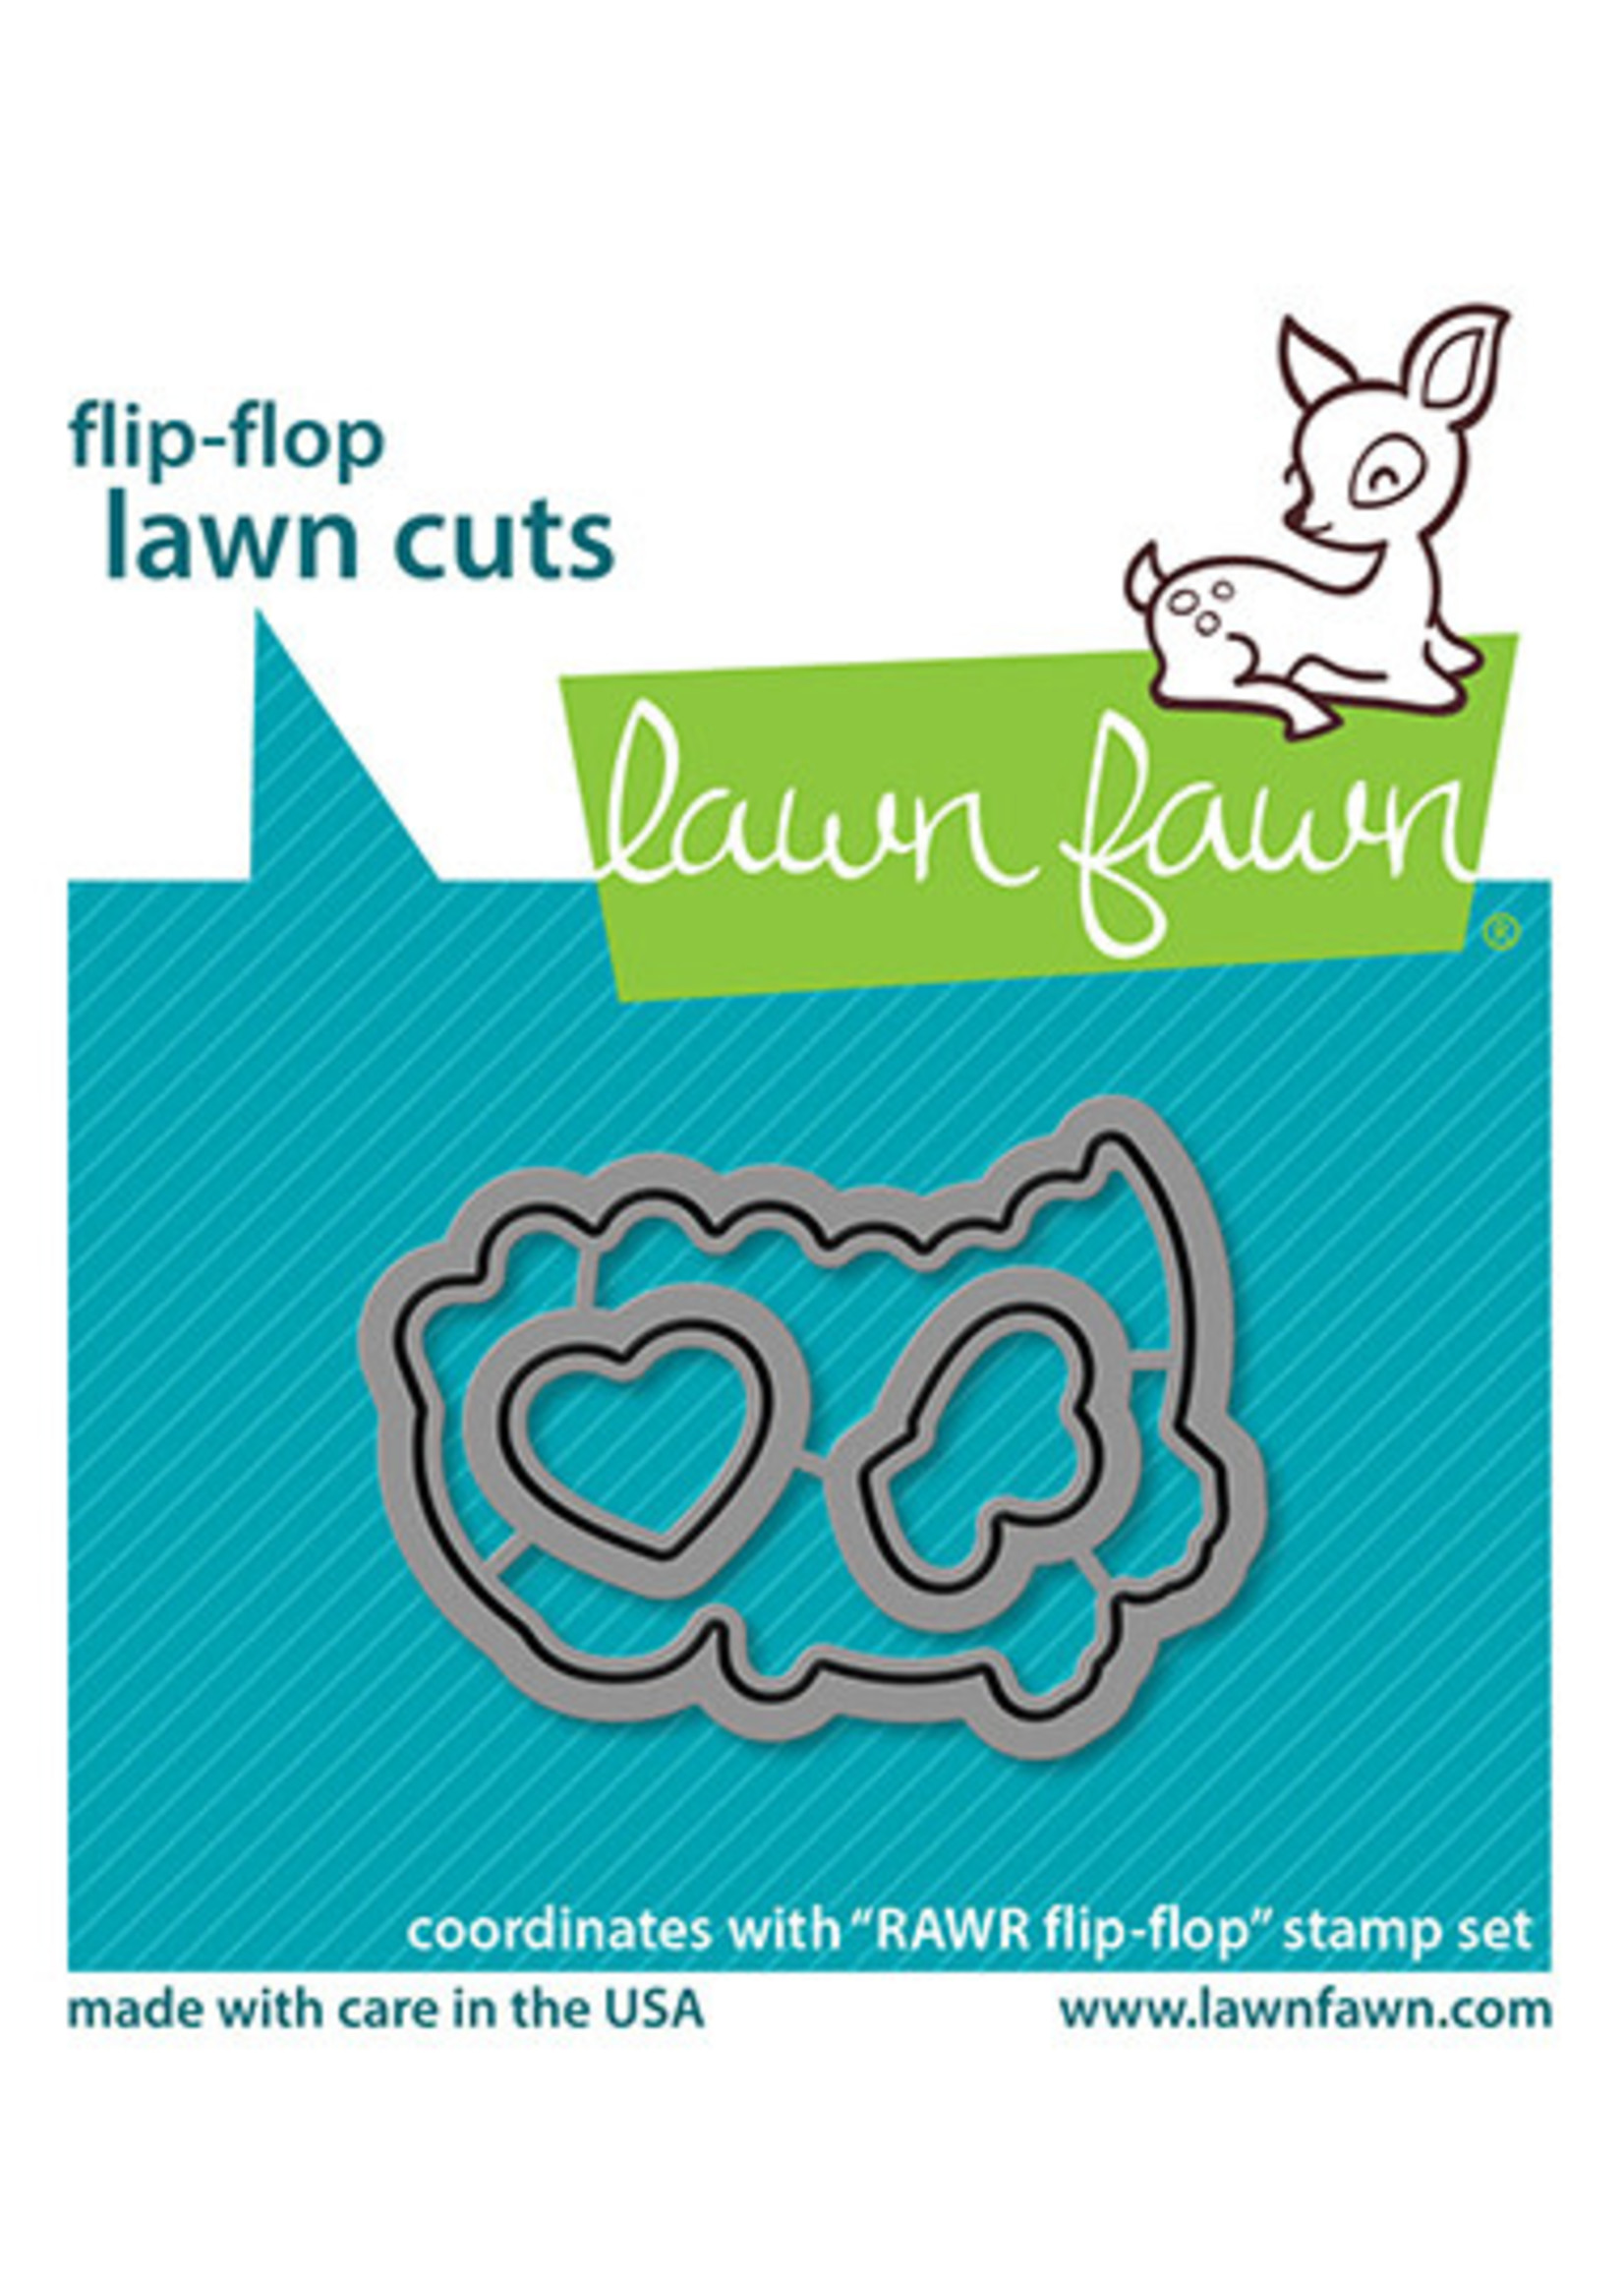 Lawn Fawn RAWR flip-flop lawn cuts die